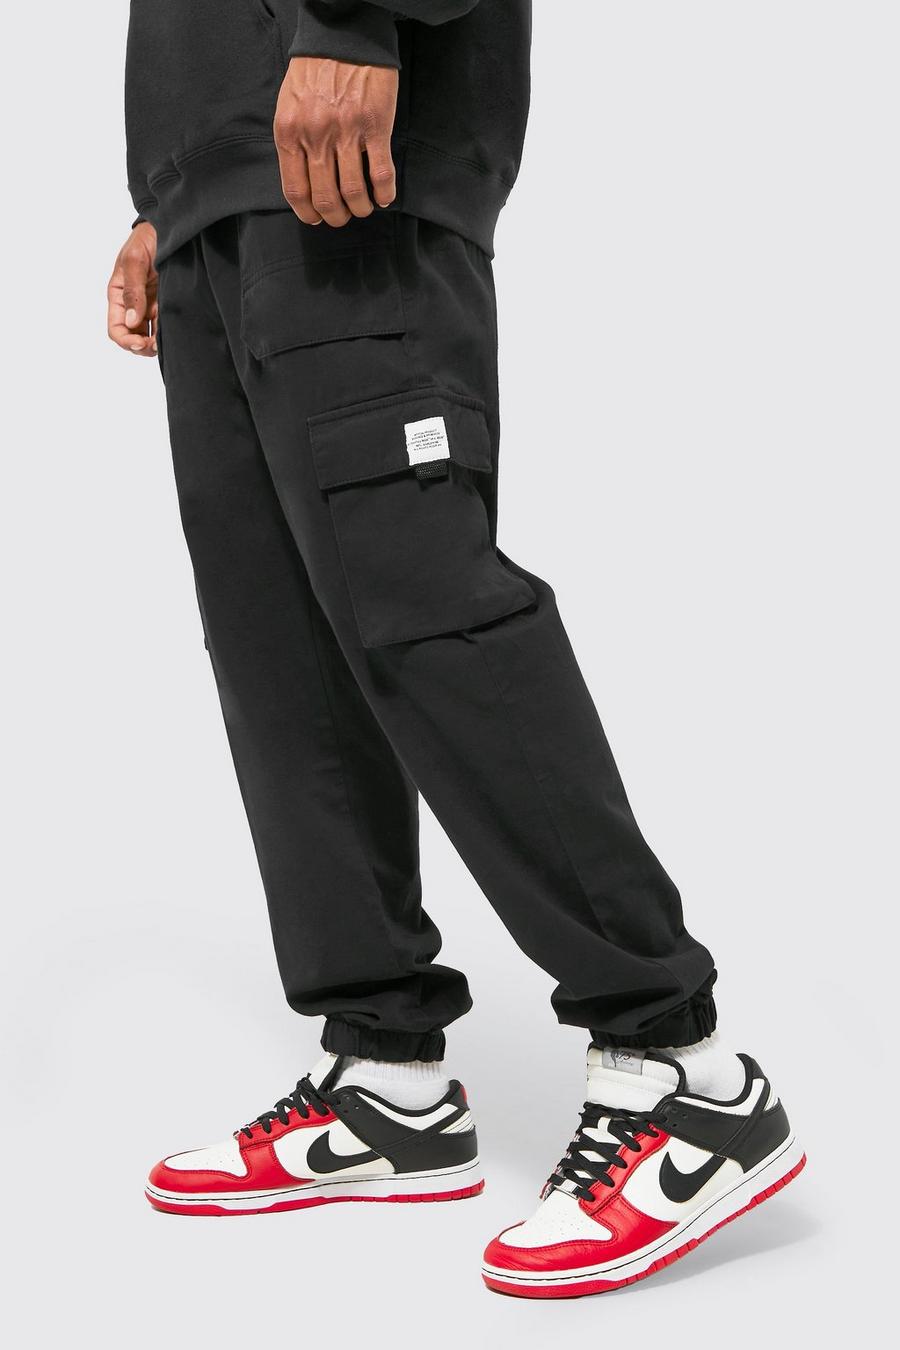 Pantalón deportivo Regular cargo de sarga con cinturón, Black nero